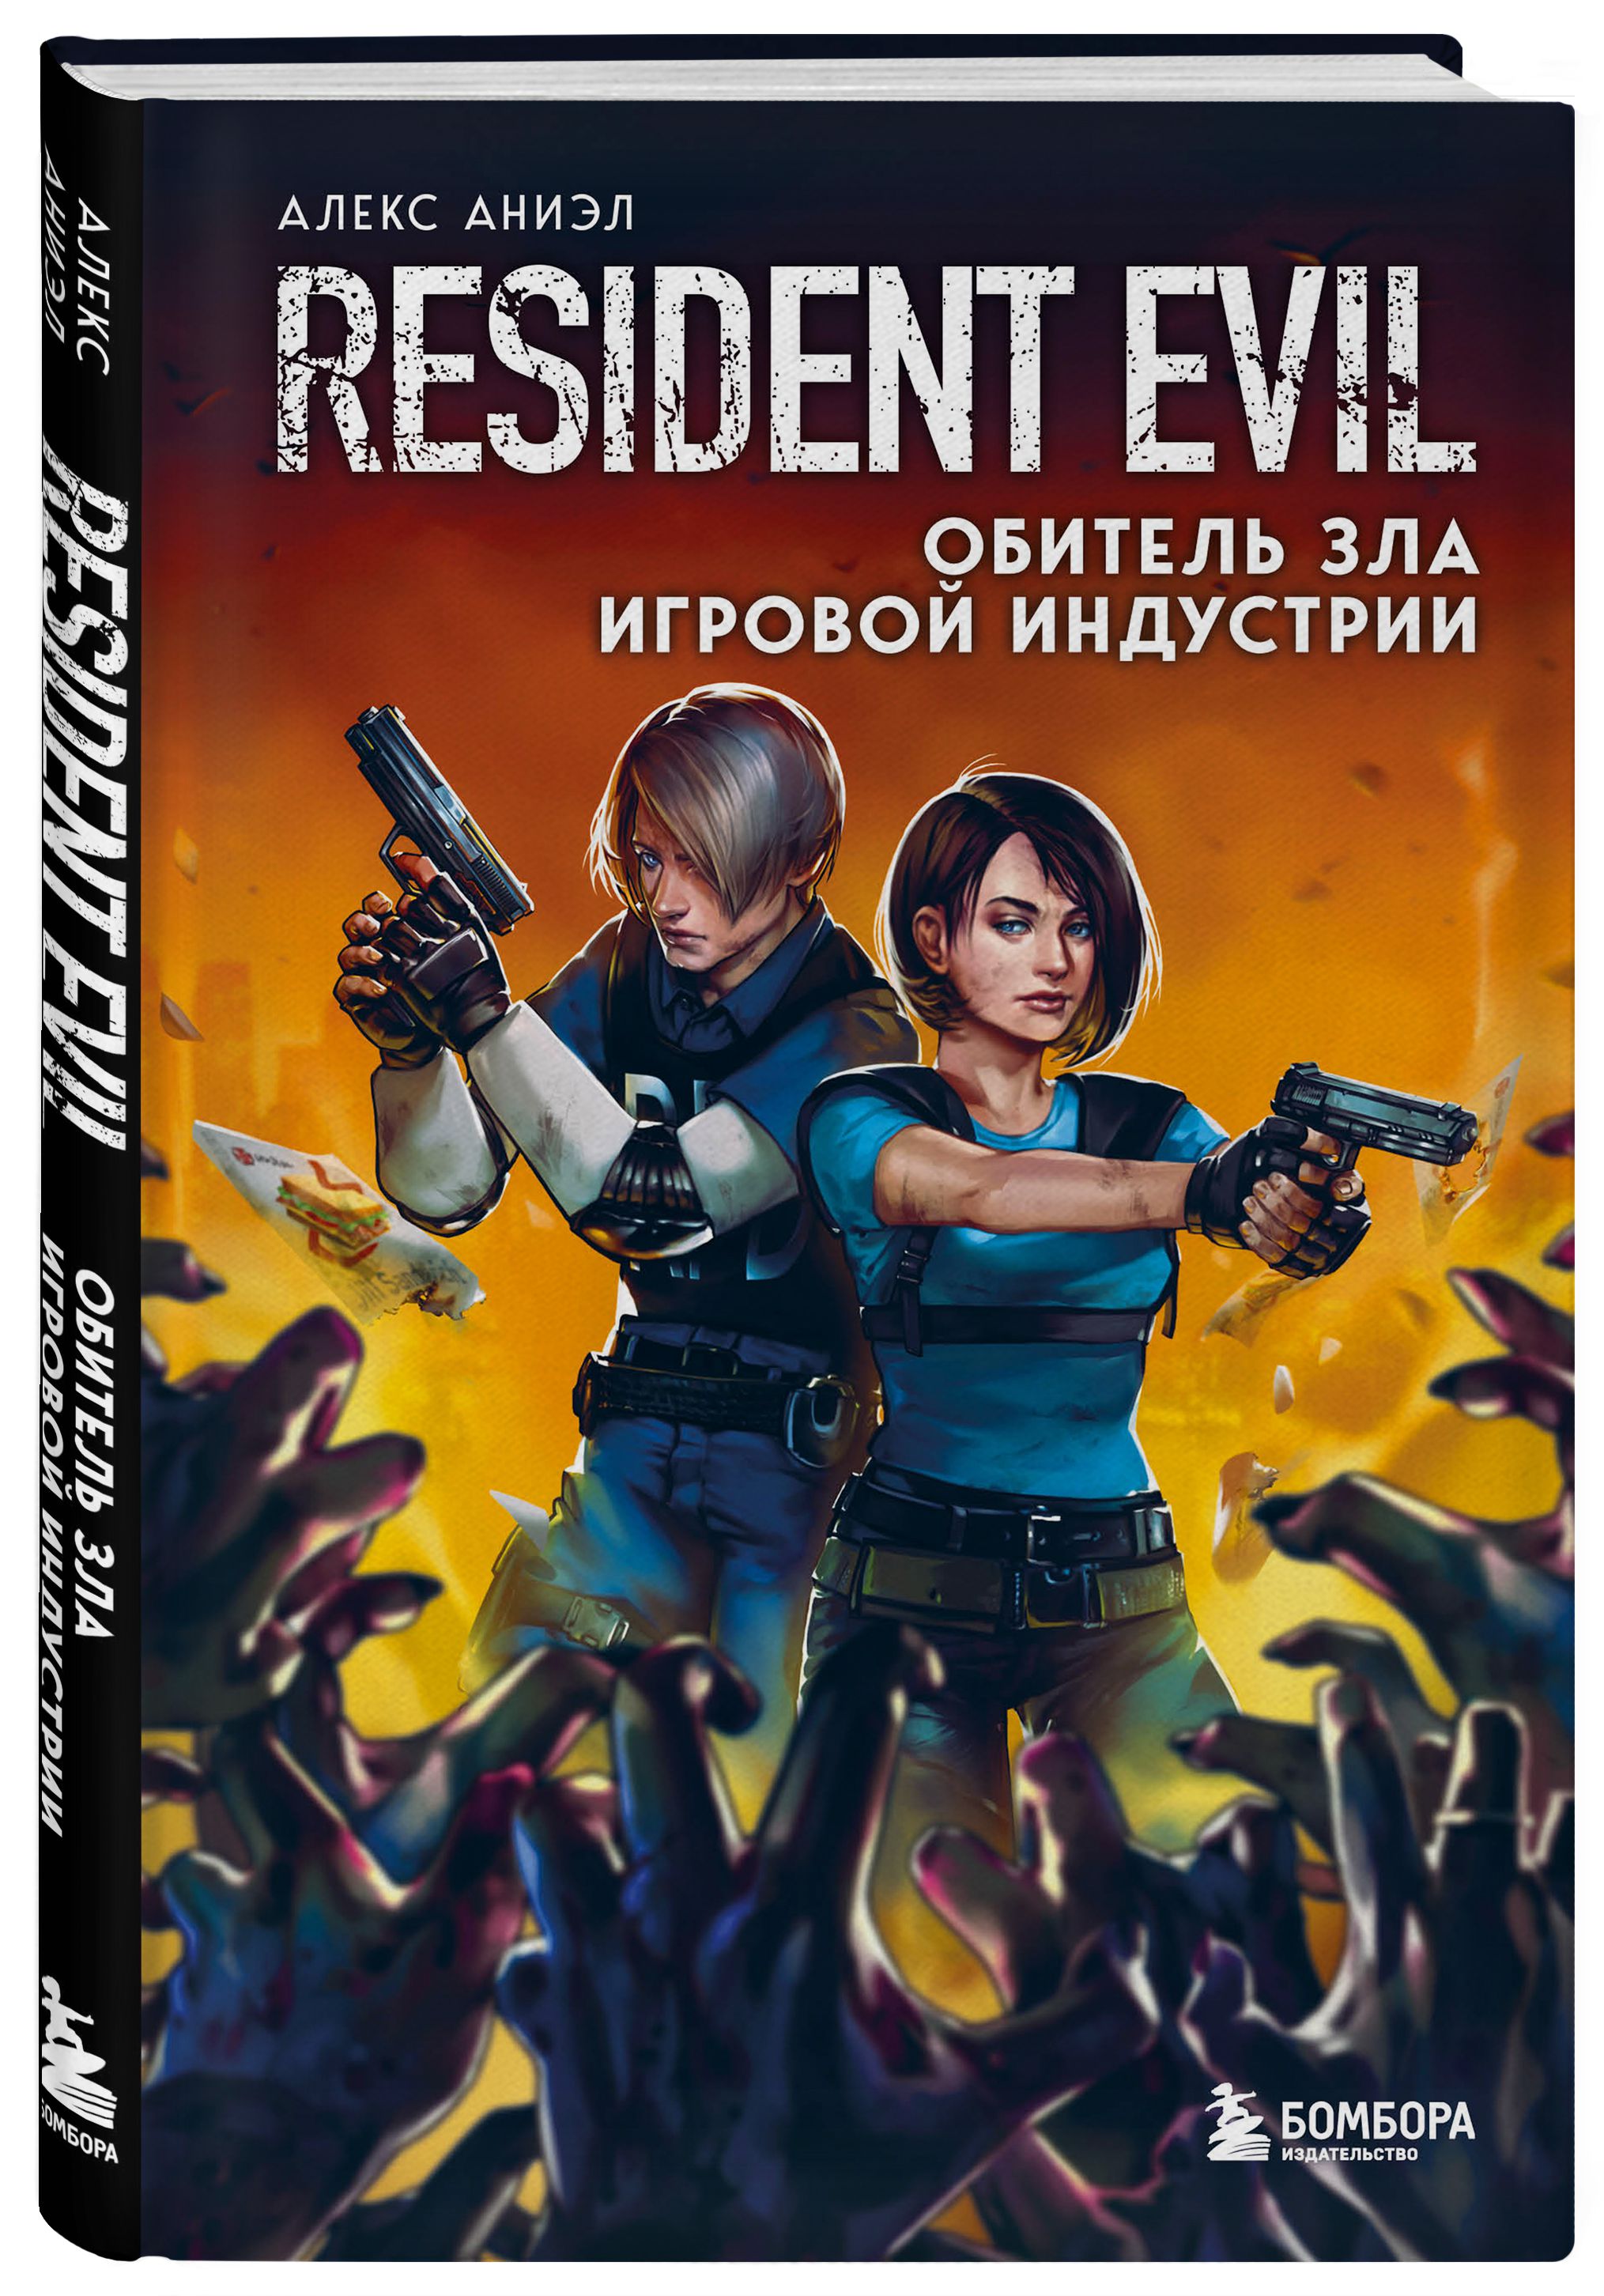 цена Resident Evil: Обитель зла игровой индустрии